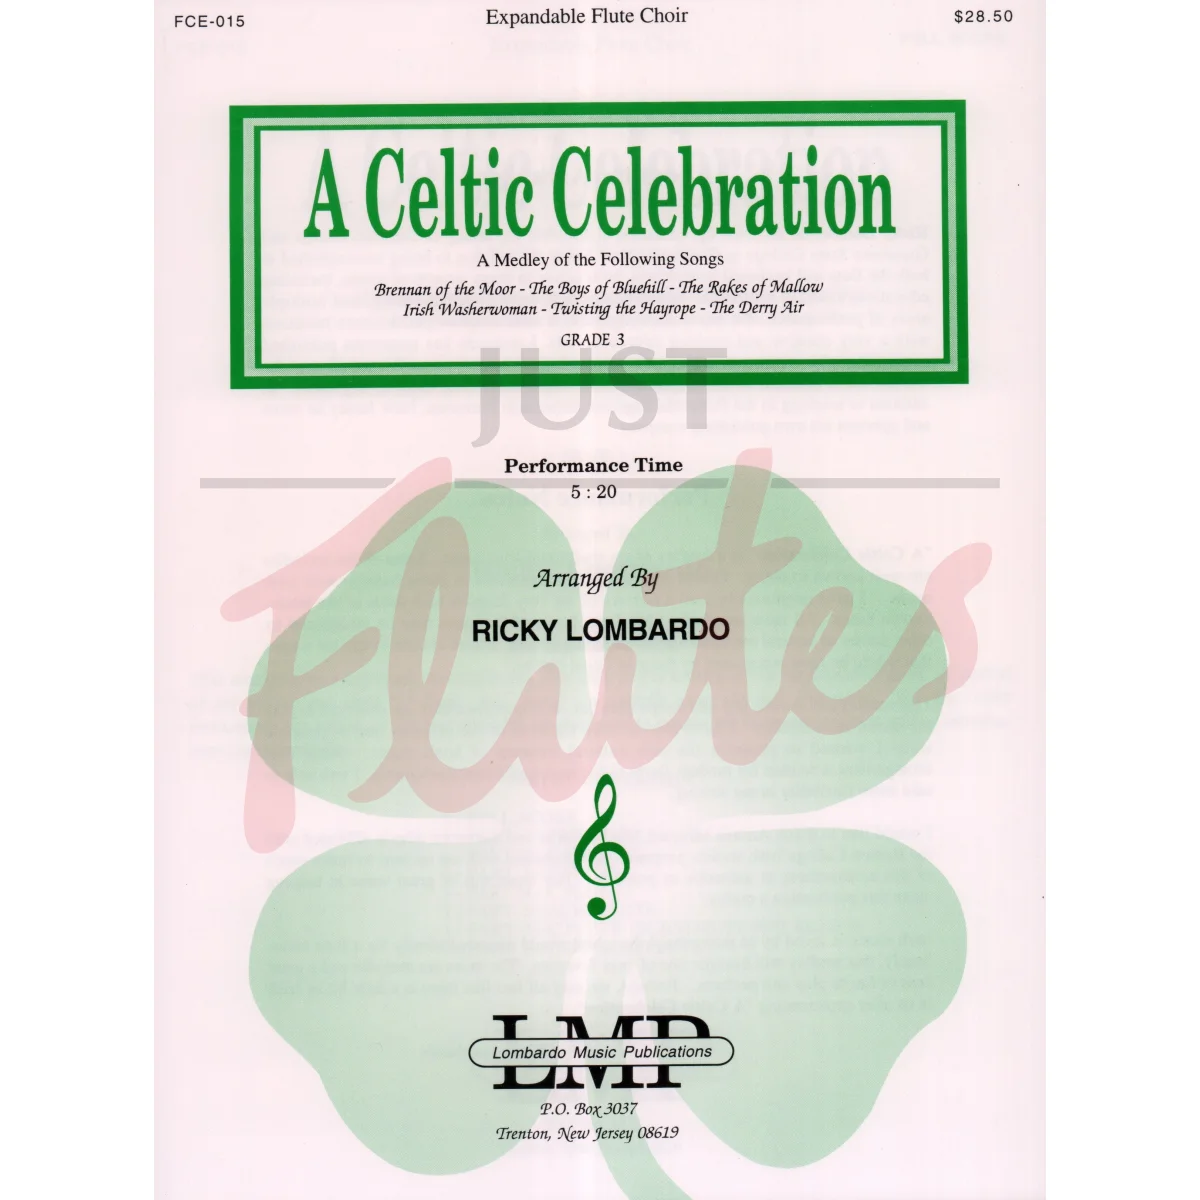 A Celtic Celebration for Expandable Flute Choir